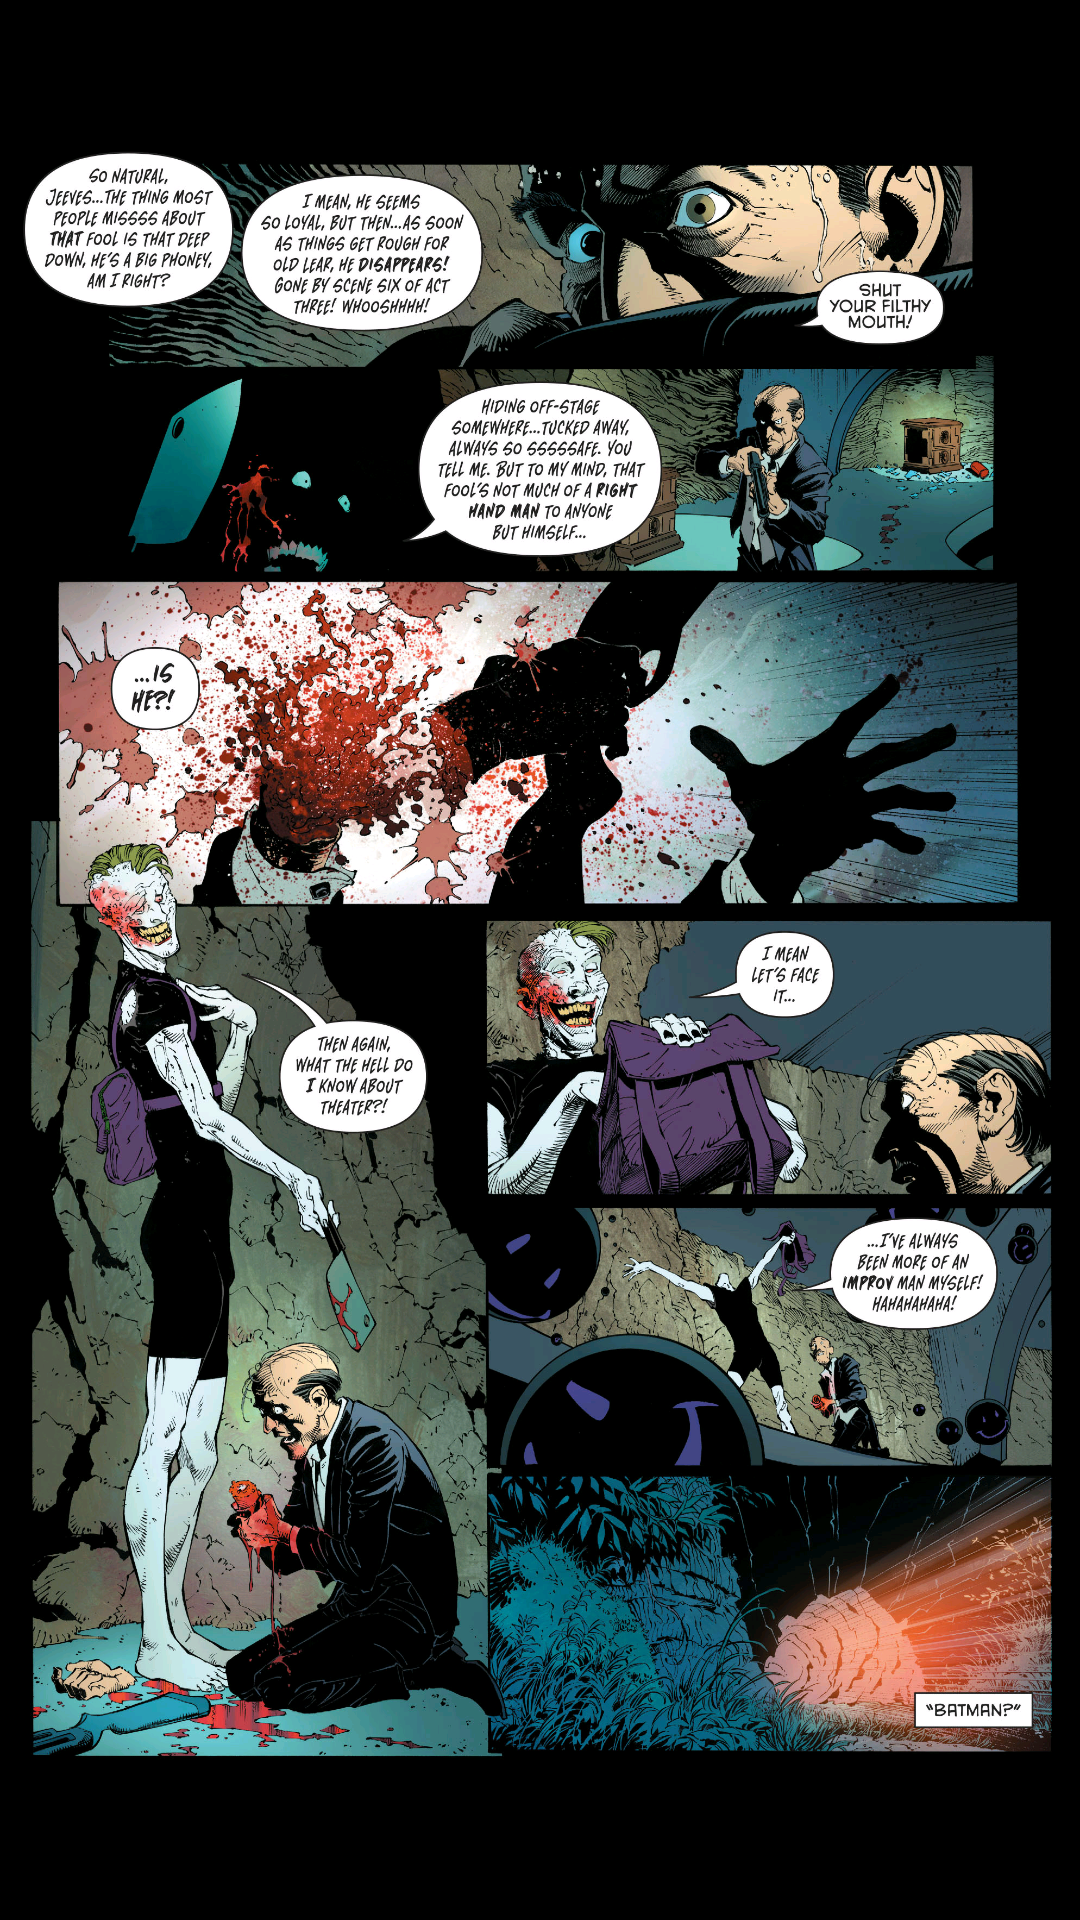 Joker chopping Alfred's Hand off